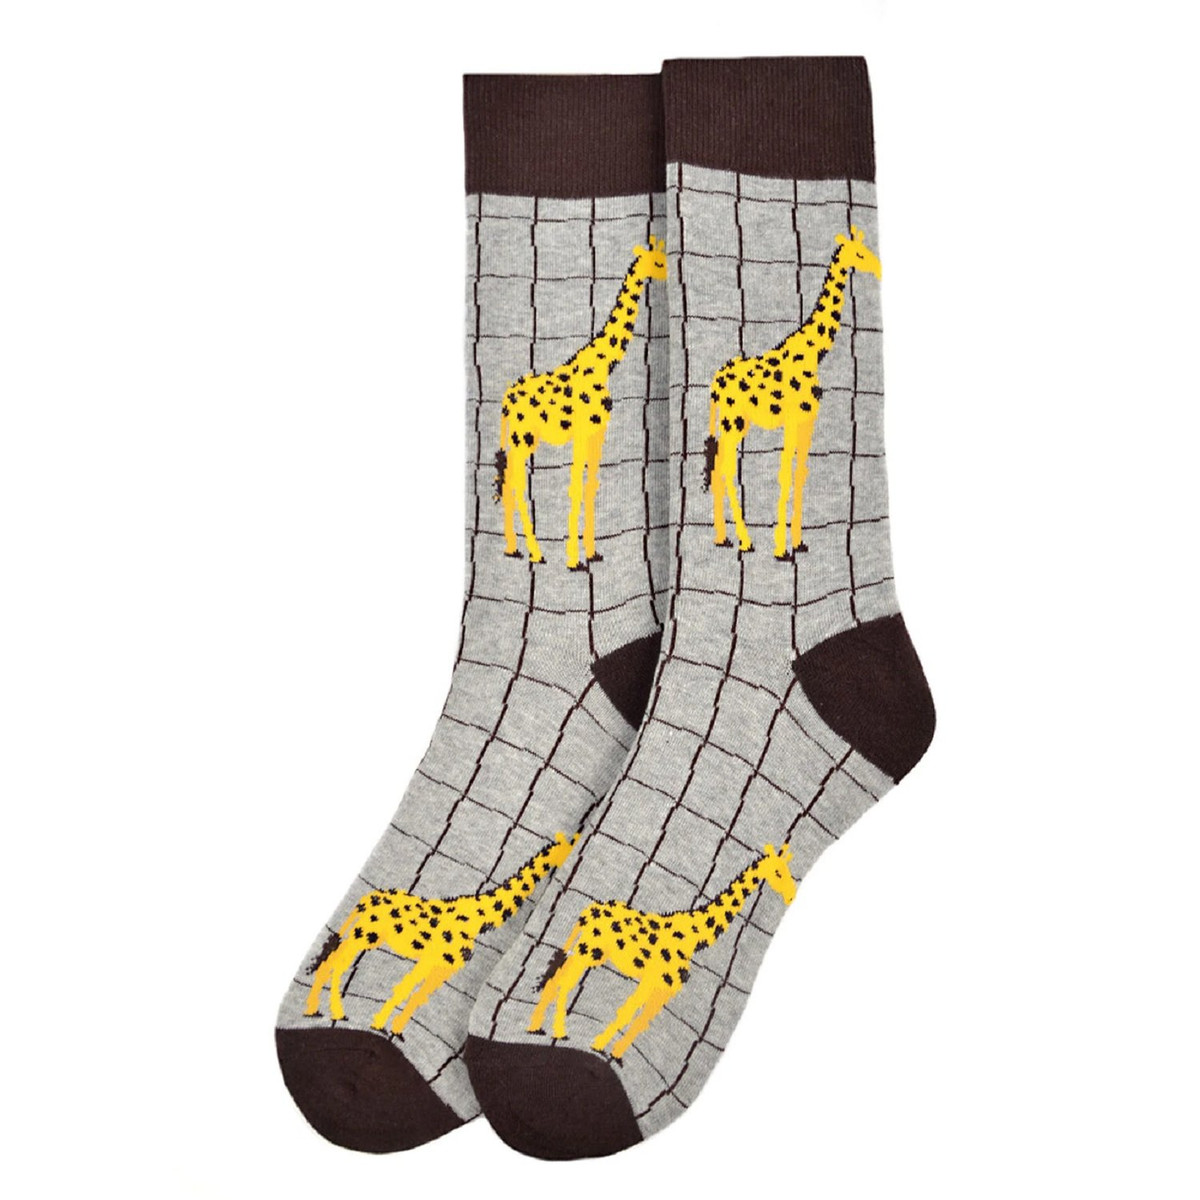 Pair of Men's Giraffe Crew Novelty Socks - Gray